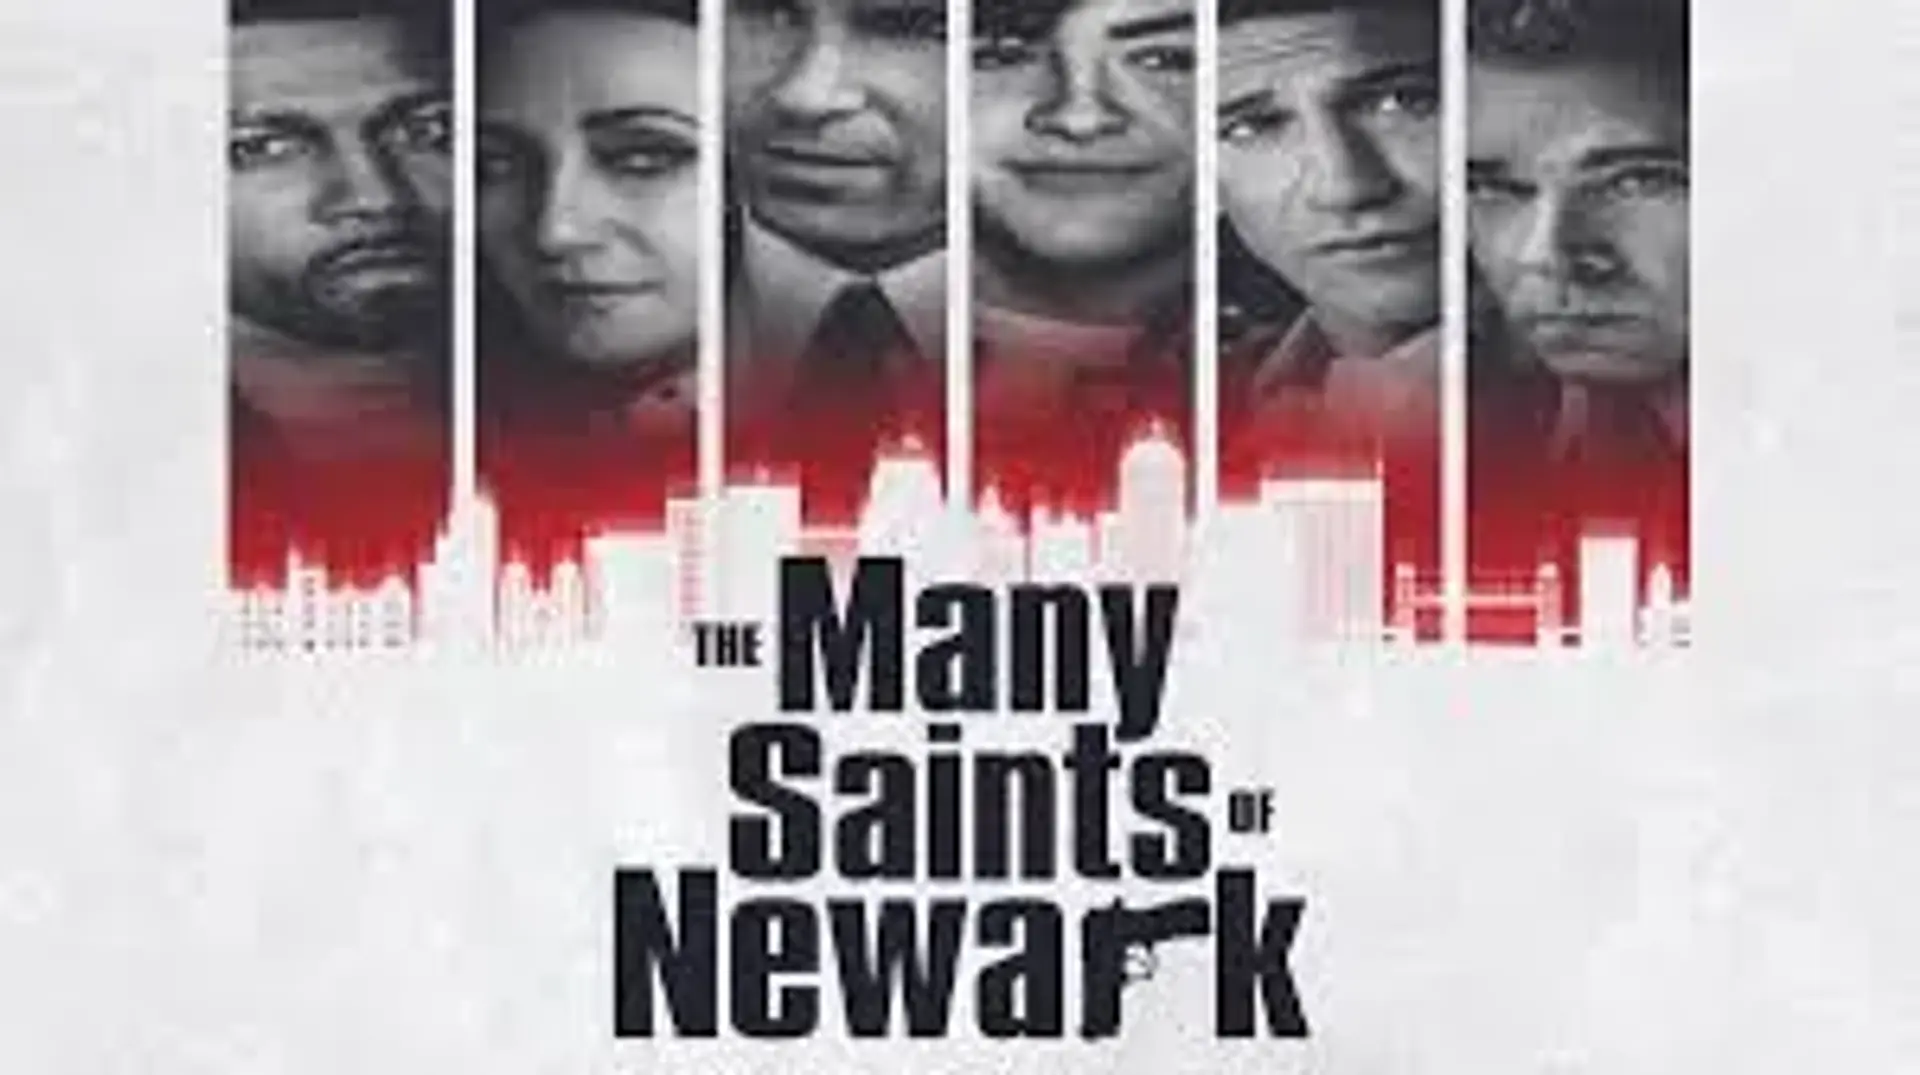 تریلر رسمی فیلم قدیسین شهر نیوآرک